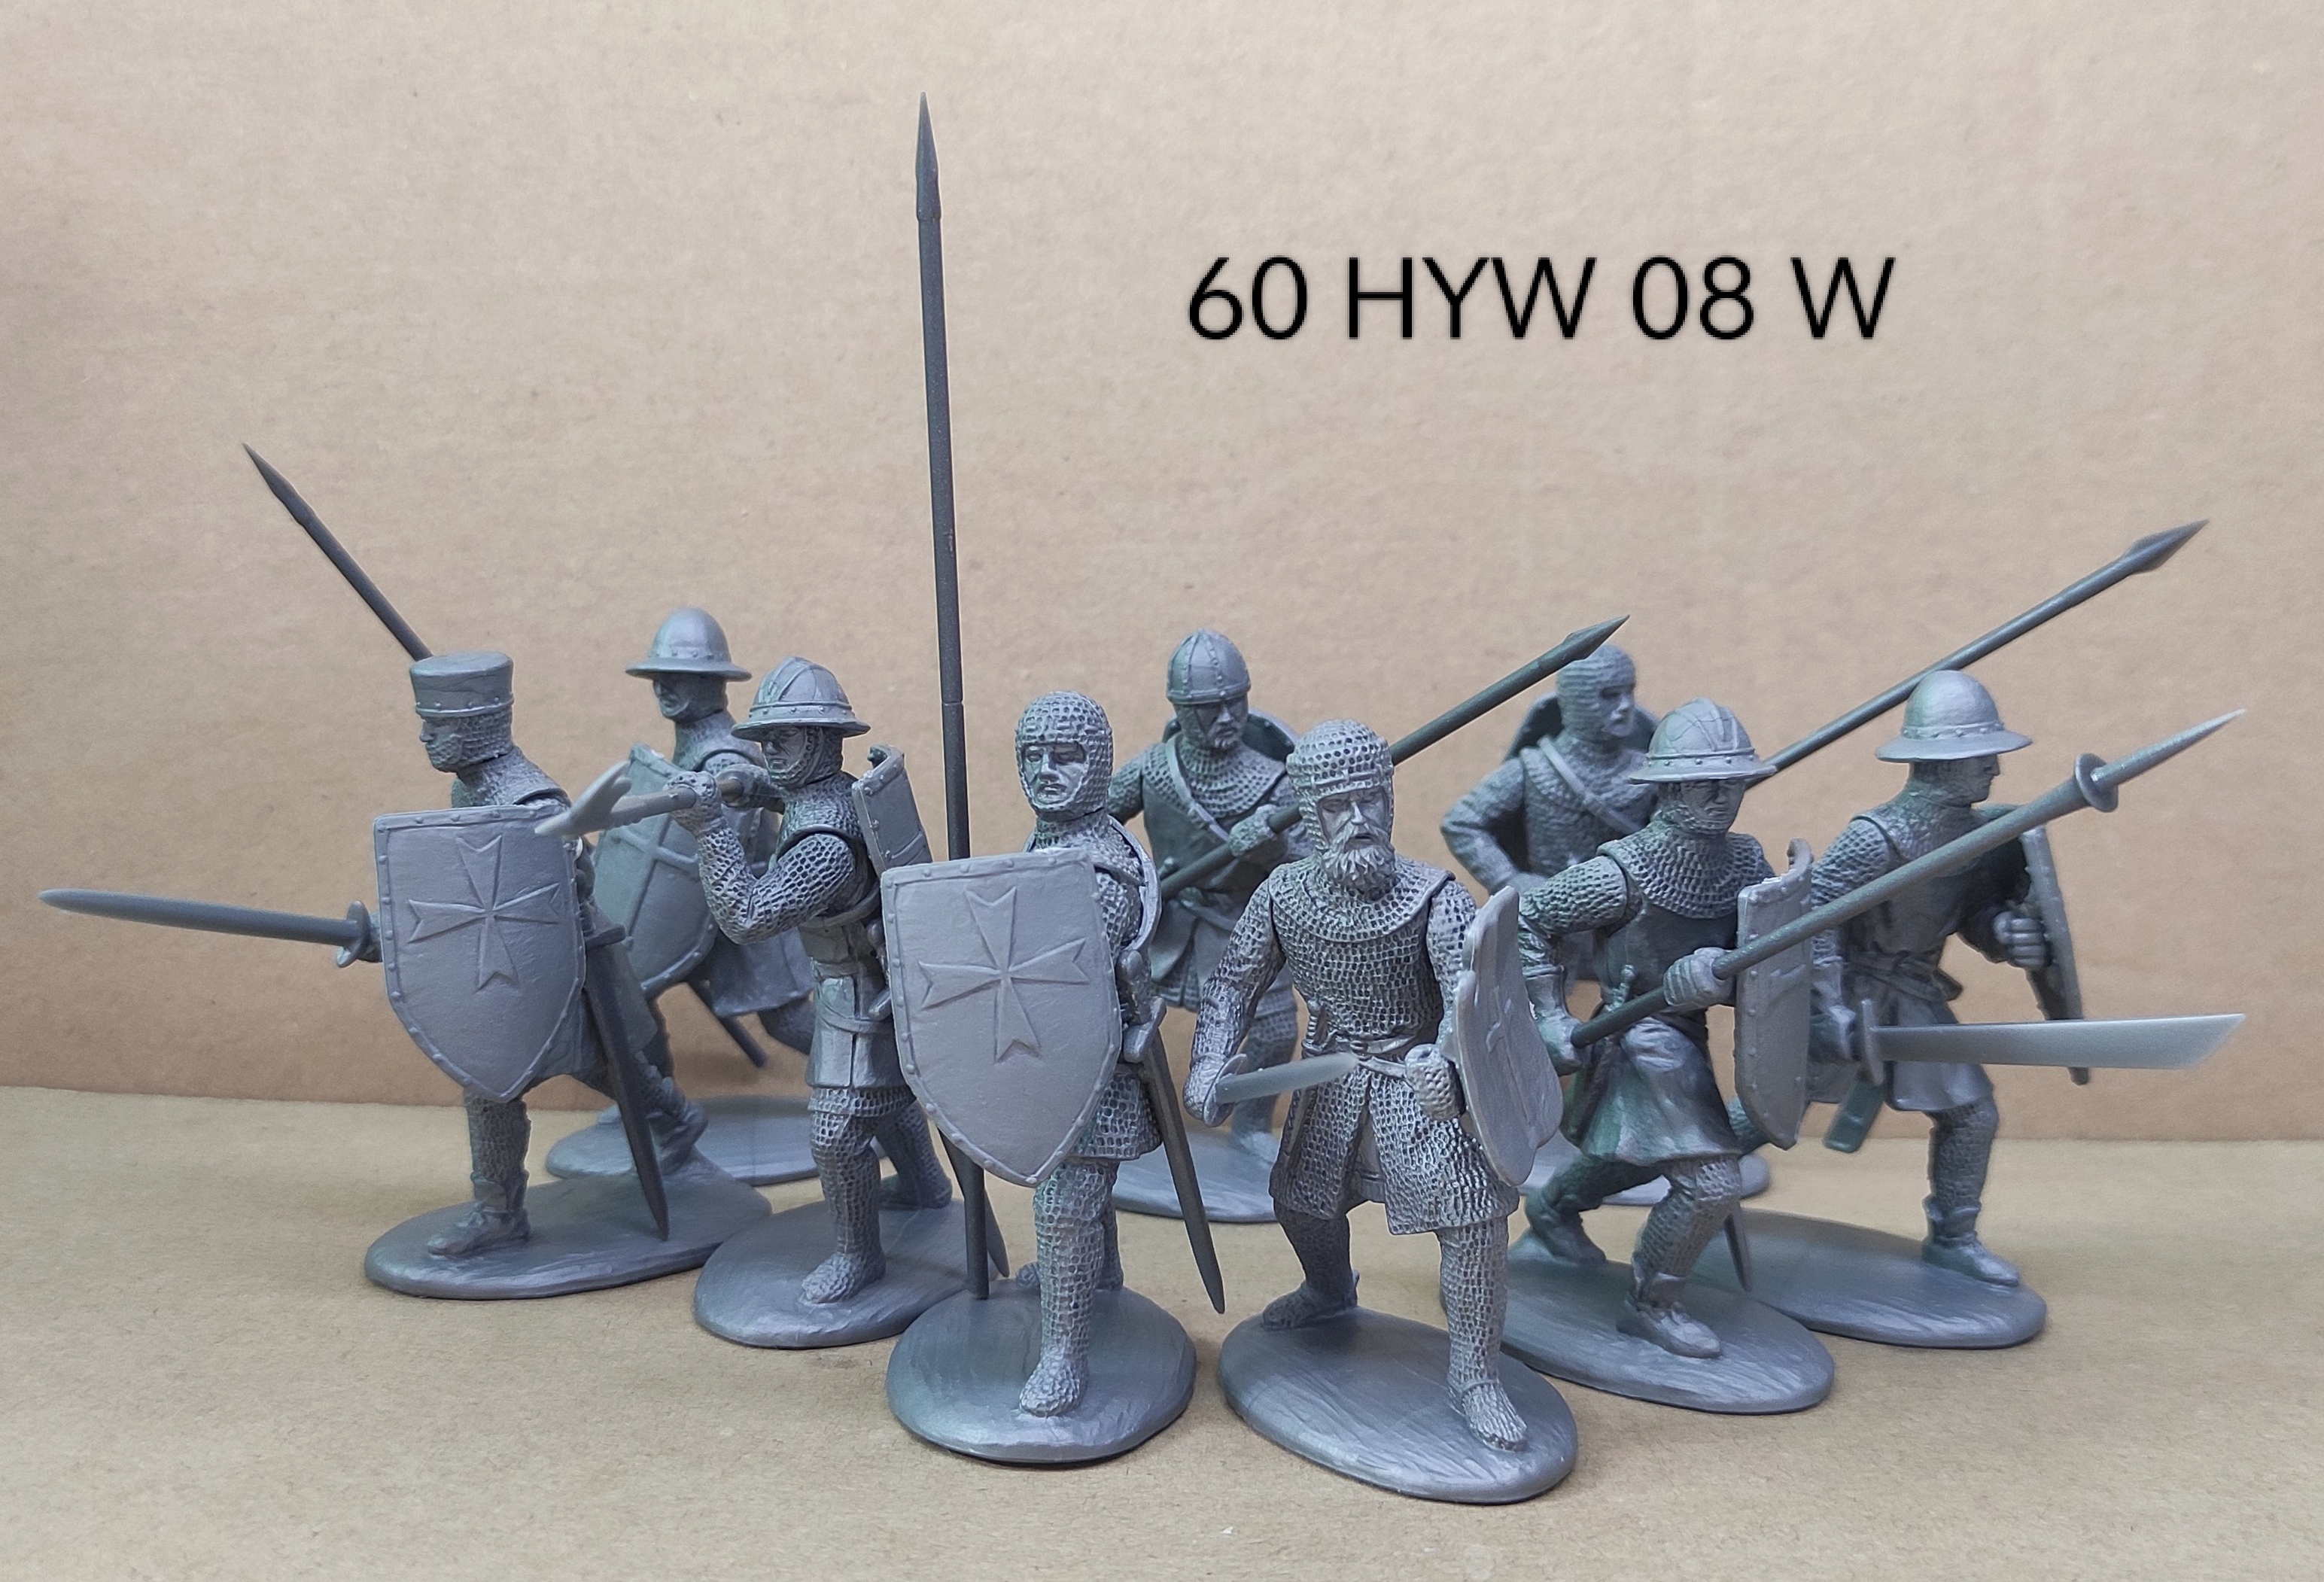 60 HYW 08 W FOOT SERGEANTS (Silver colour)